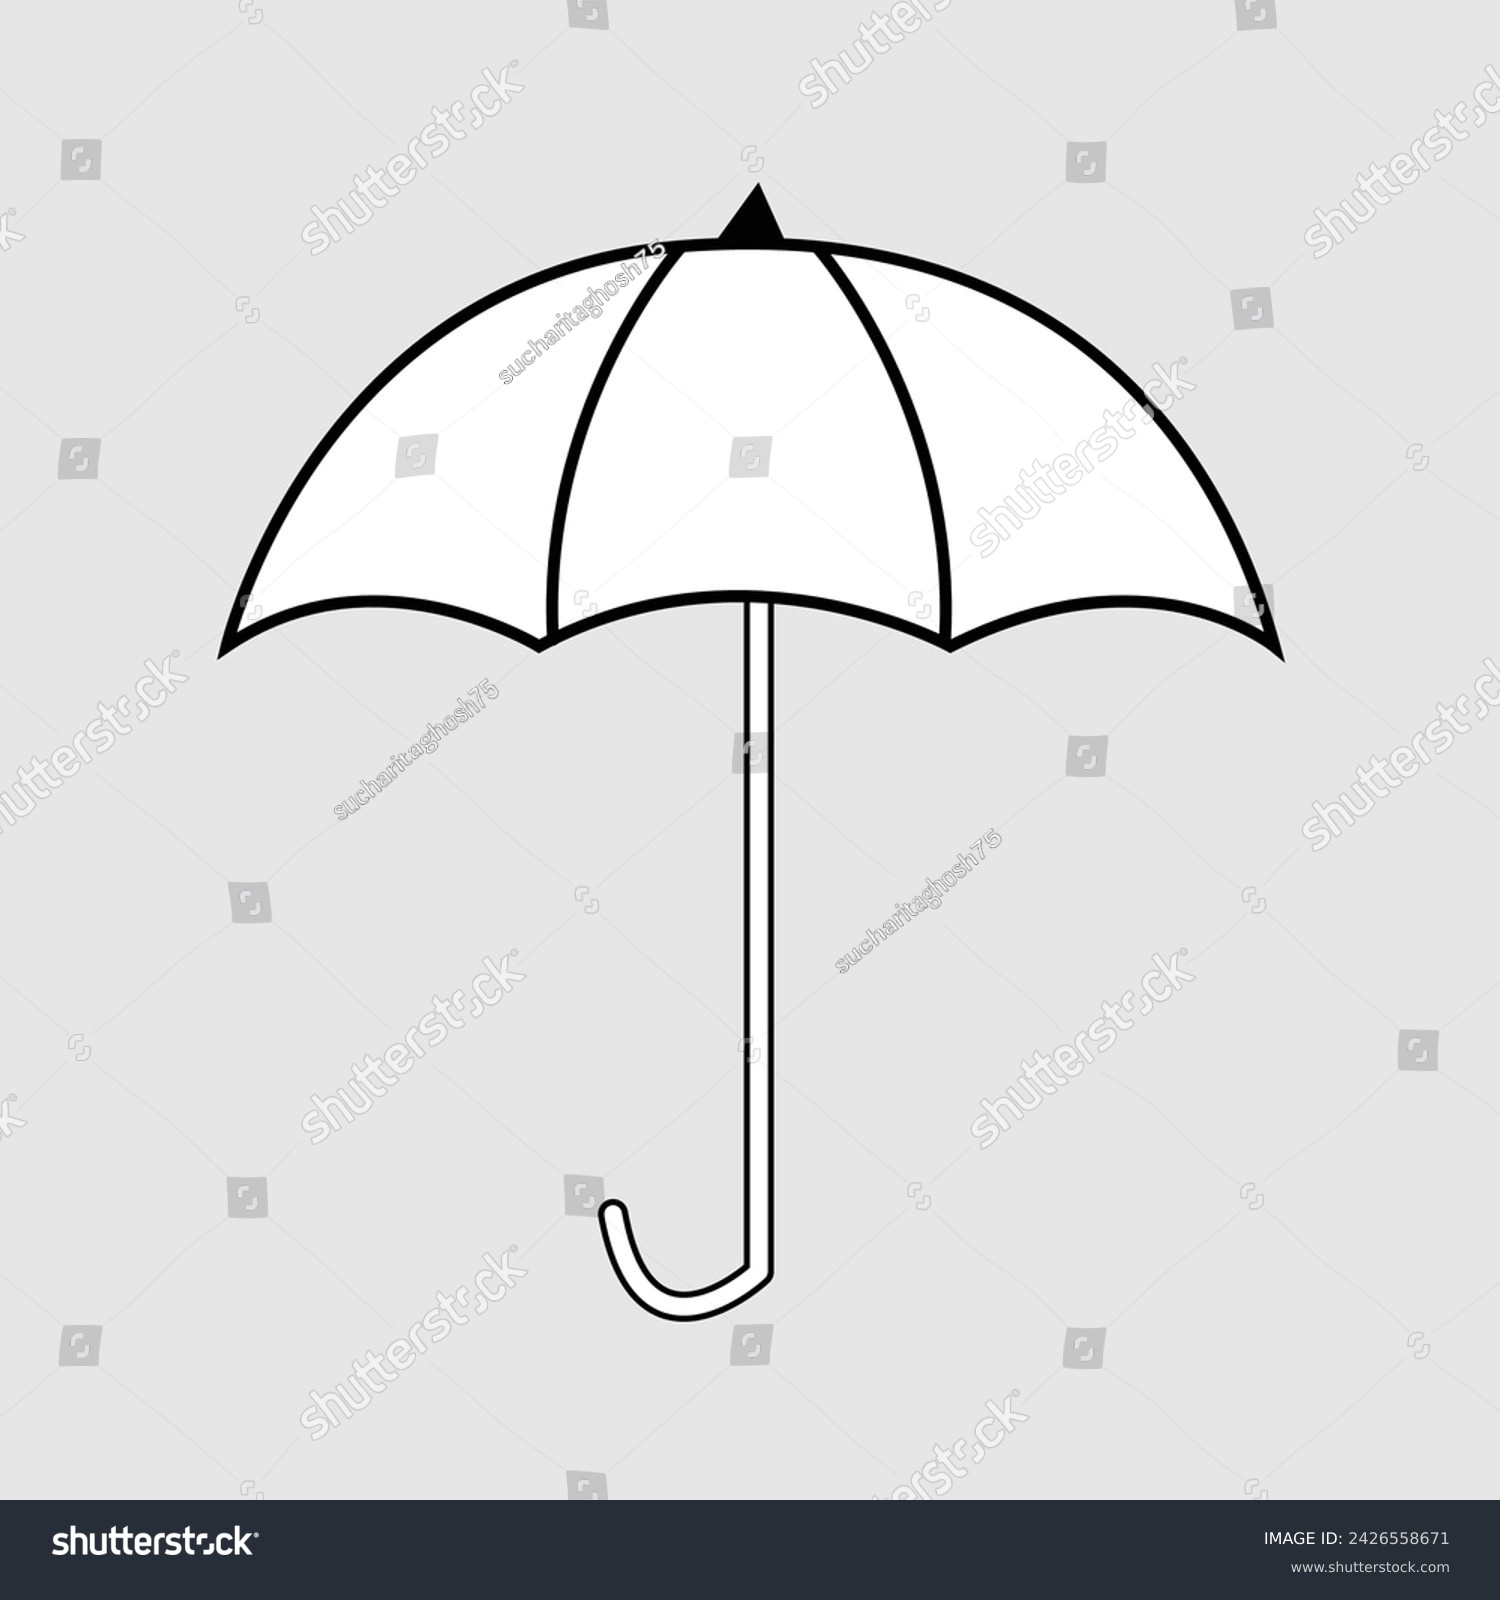 SVG of Umbrella icon on transparent background. Vector illustration. Eps file 306. svg